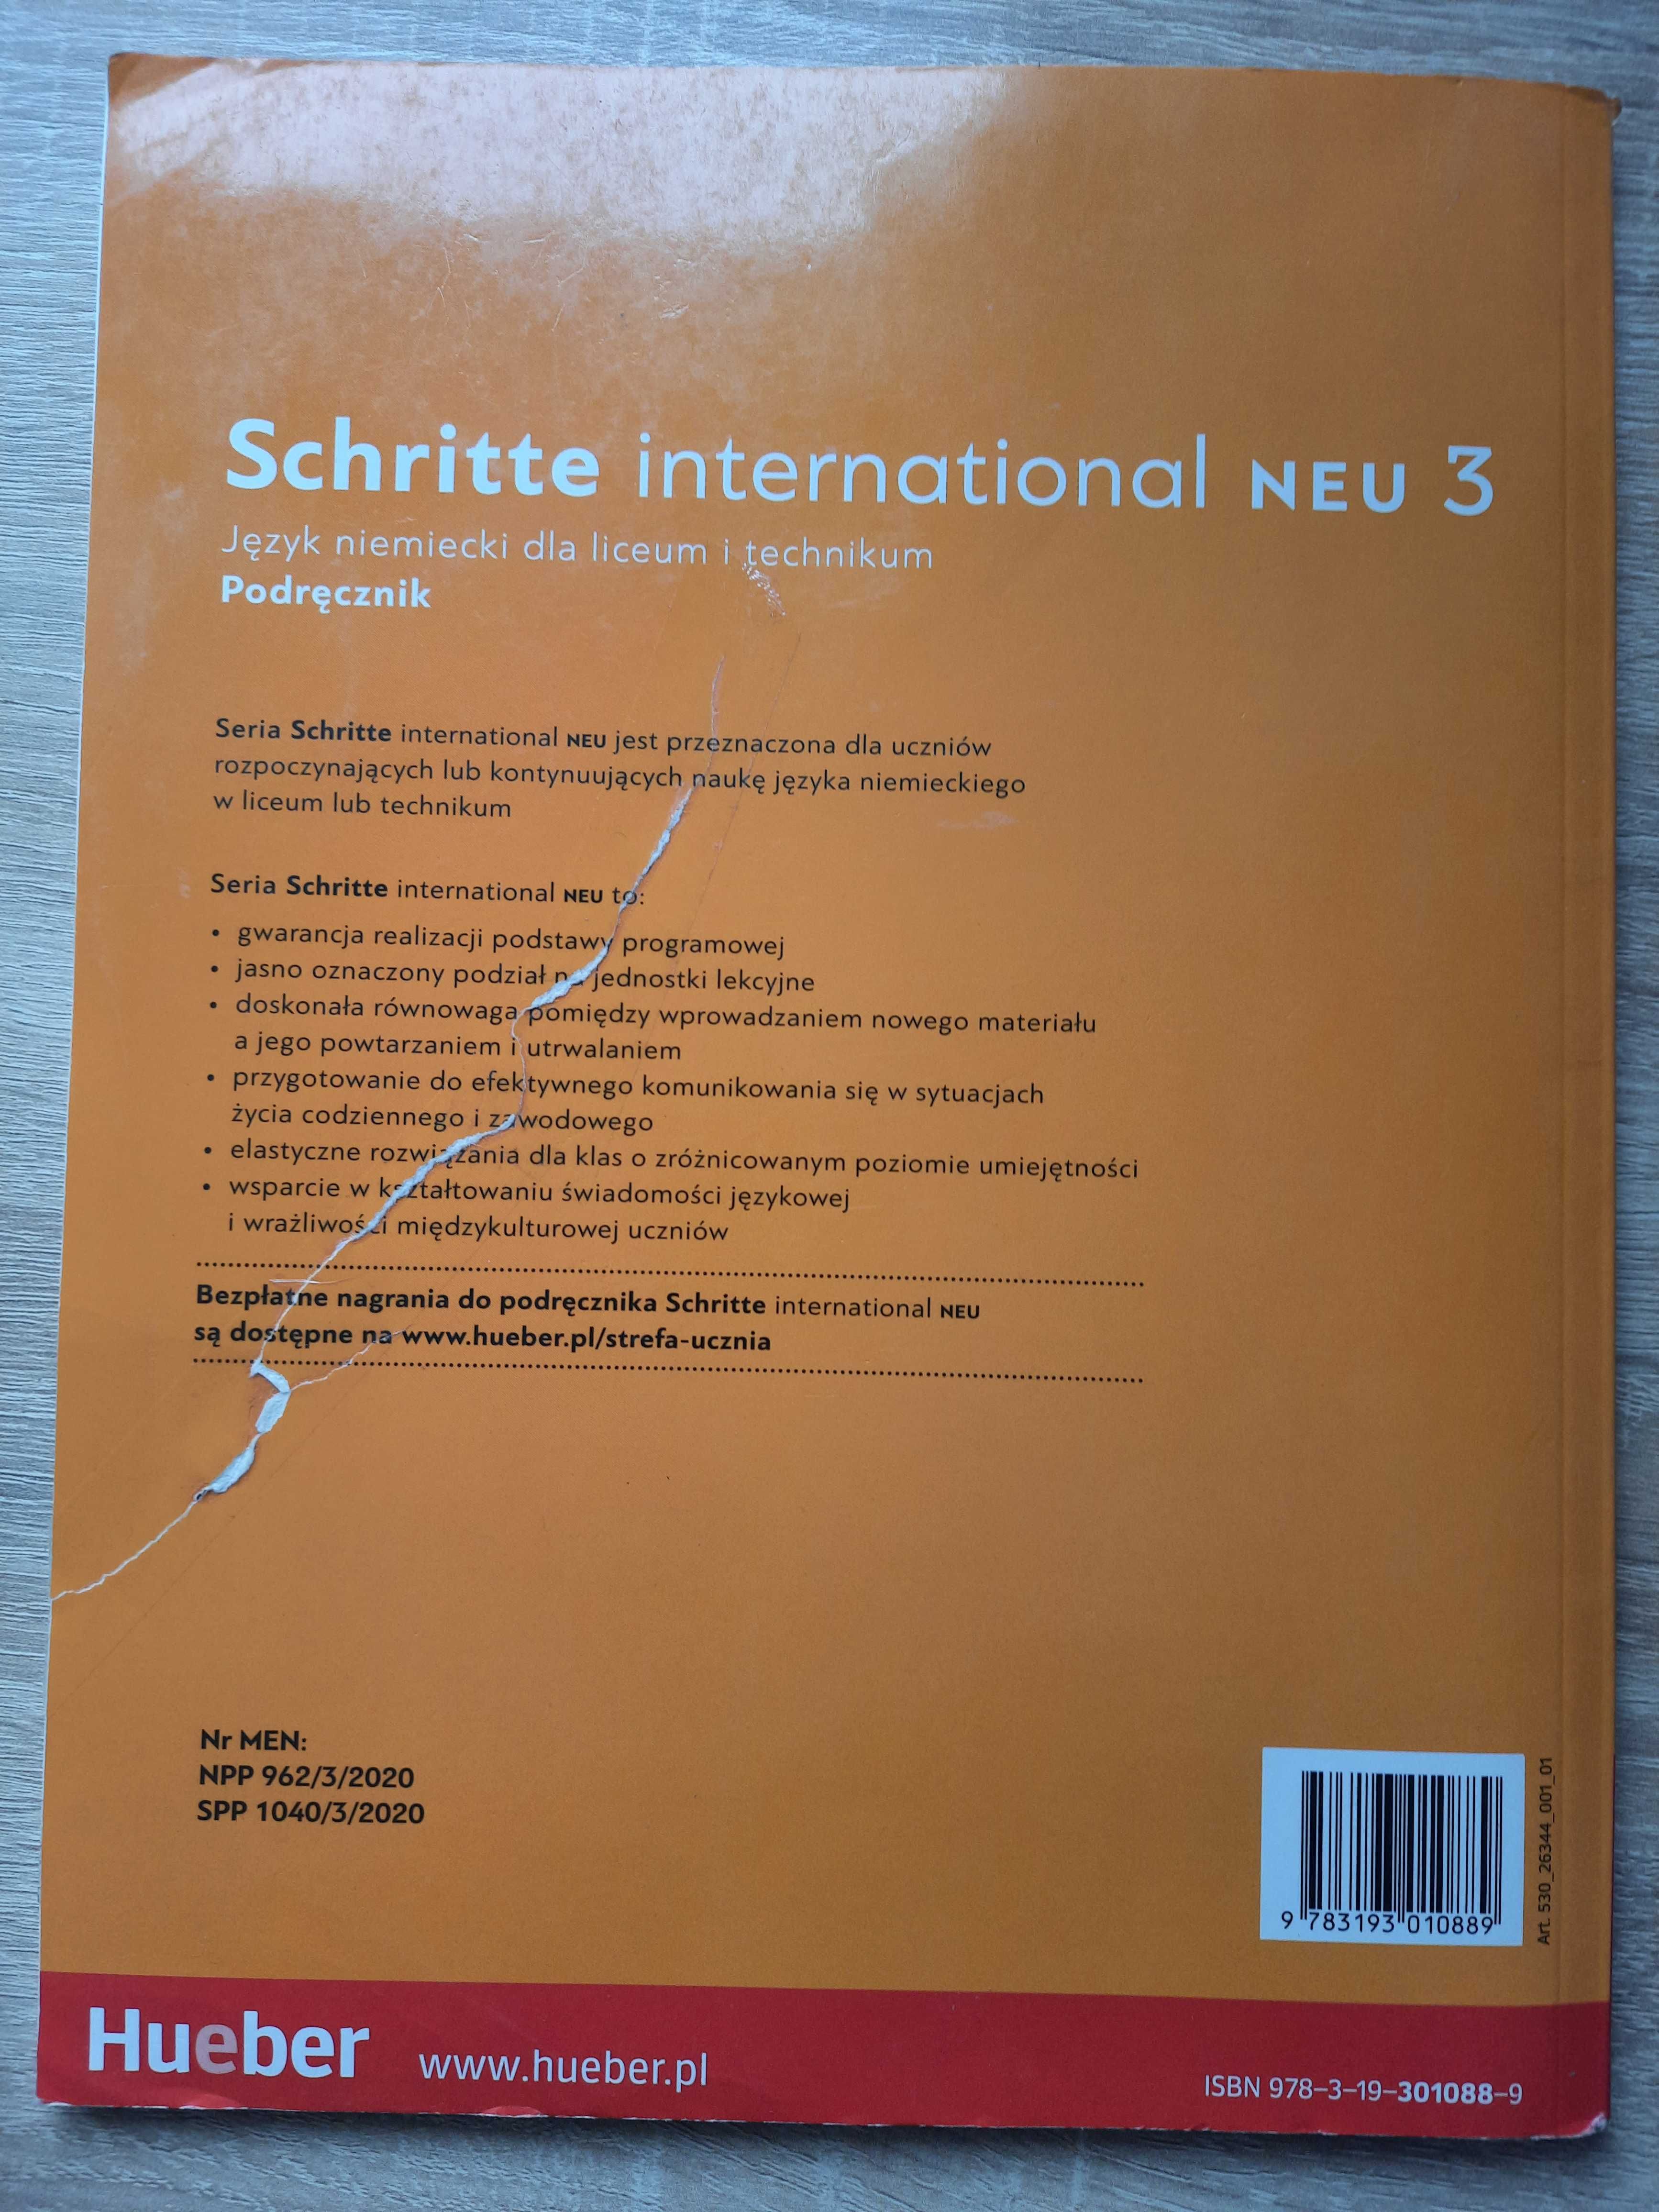 Schritte international neu 3 podręcznik język niemiecki liceum